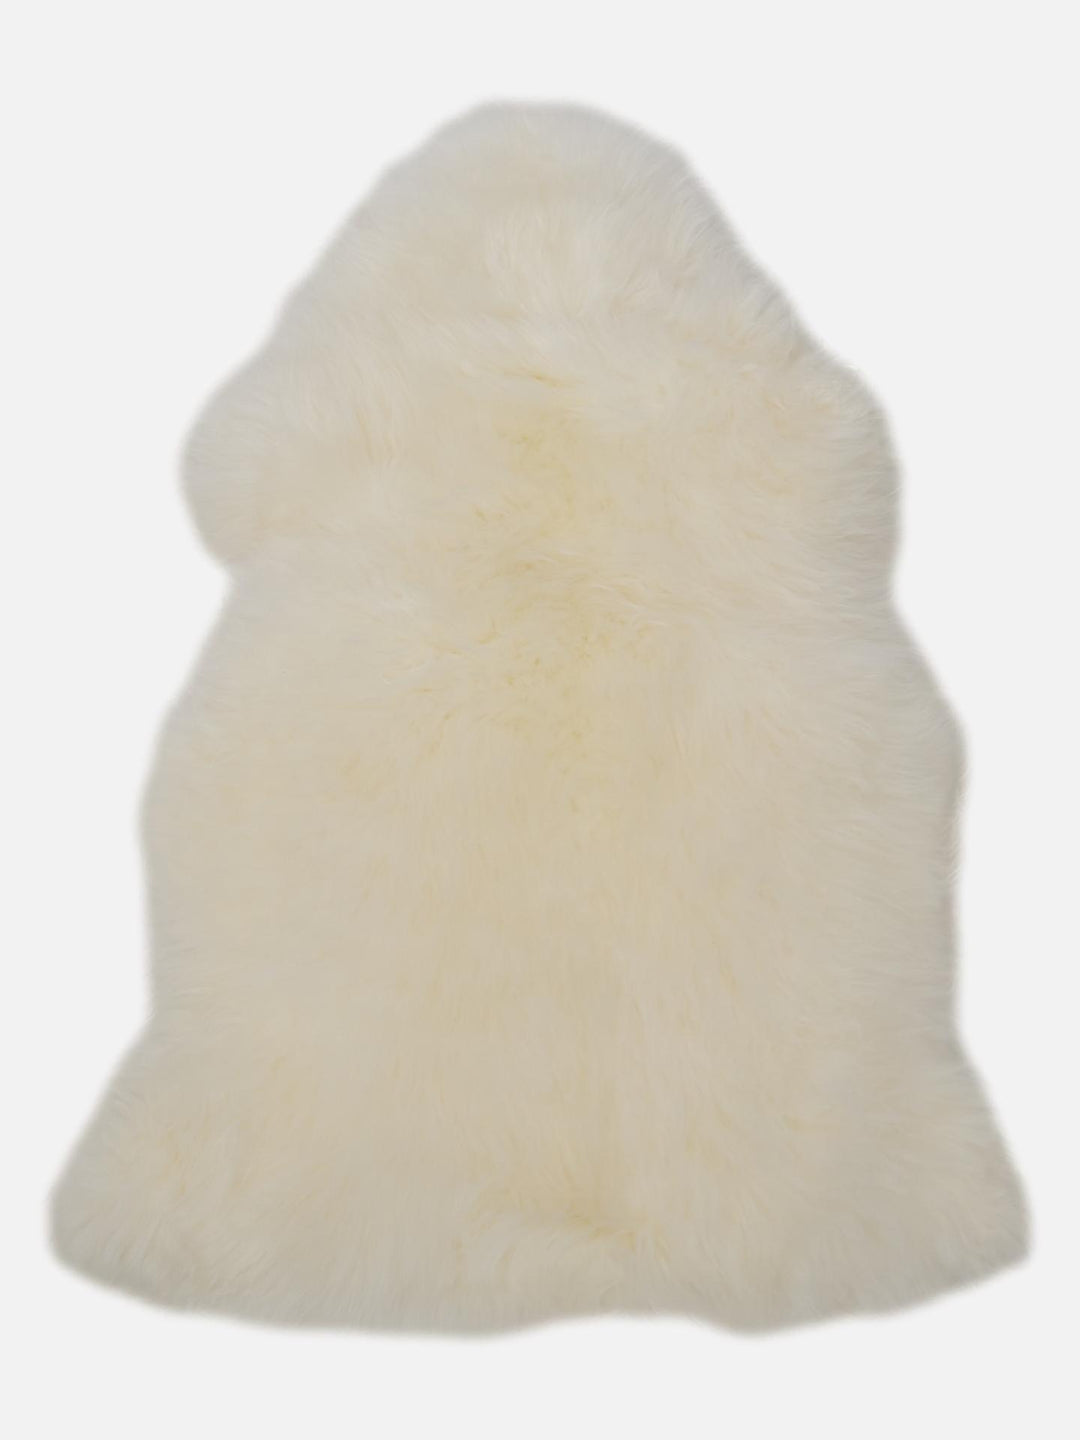 Rug 60*90 cm. - New Zeeland Sheep Skin  - White